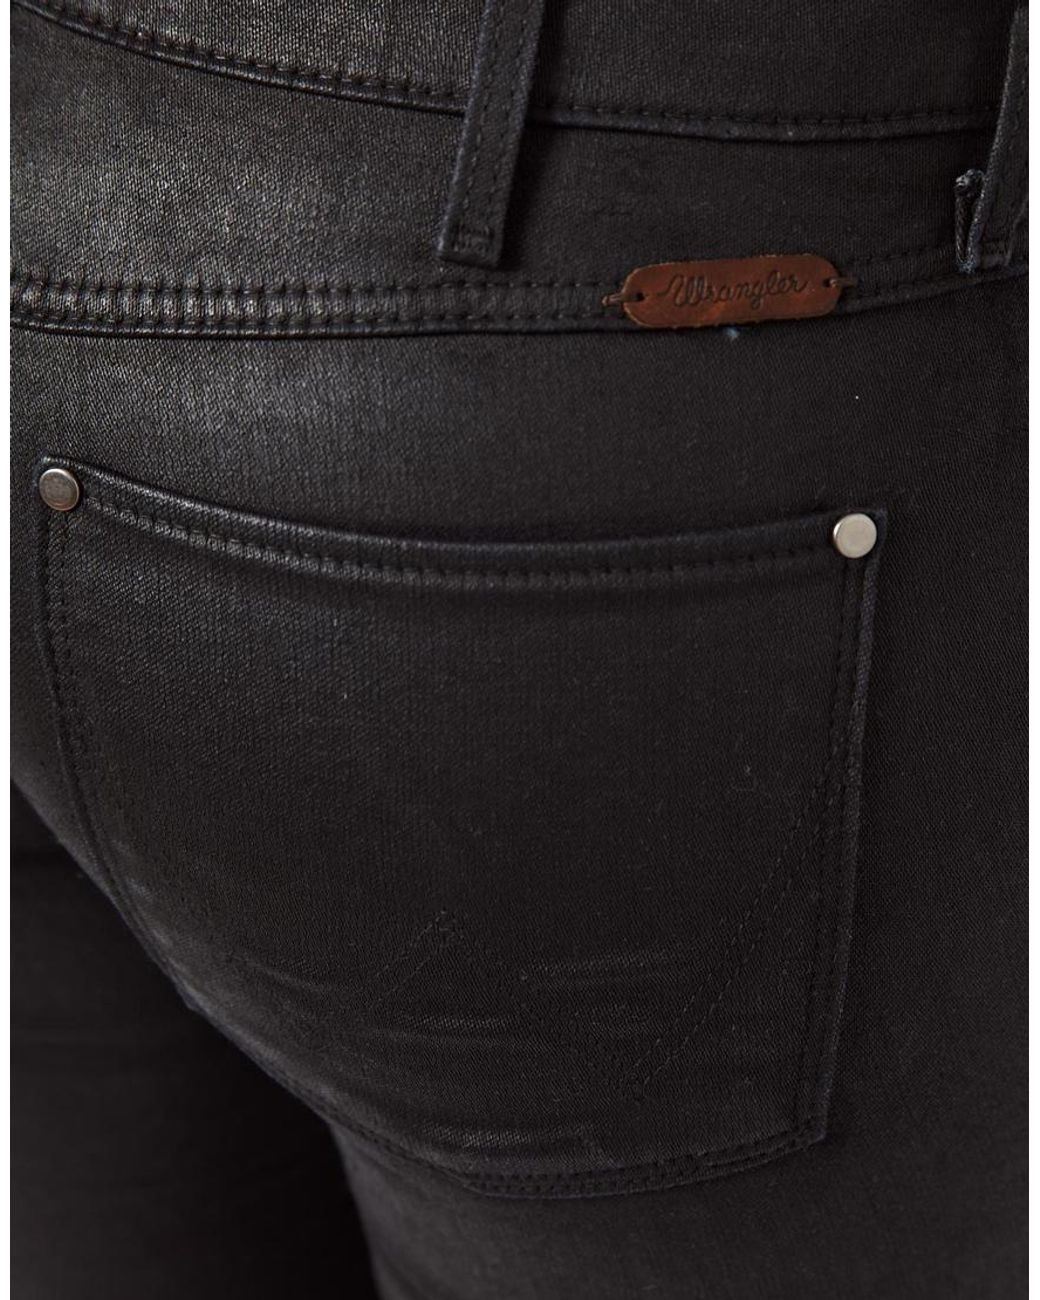 Arriba 62+ imagen wrangler leather jeans - Thptnganamst.edu.vn